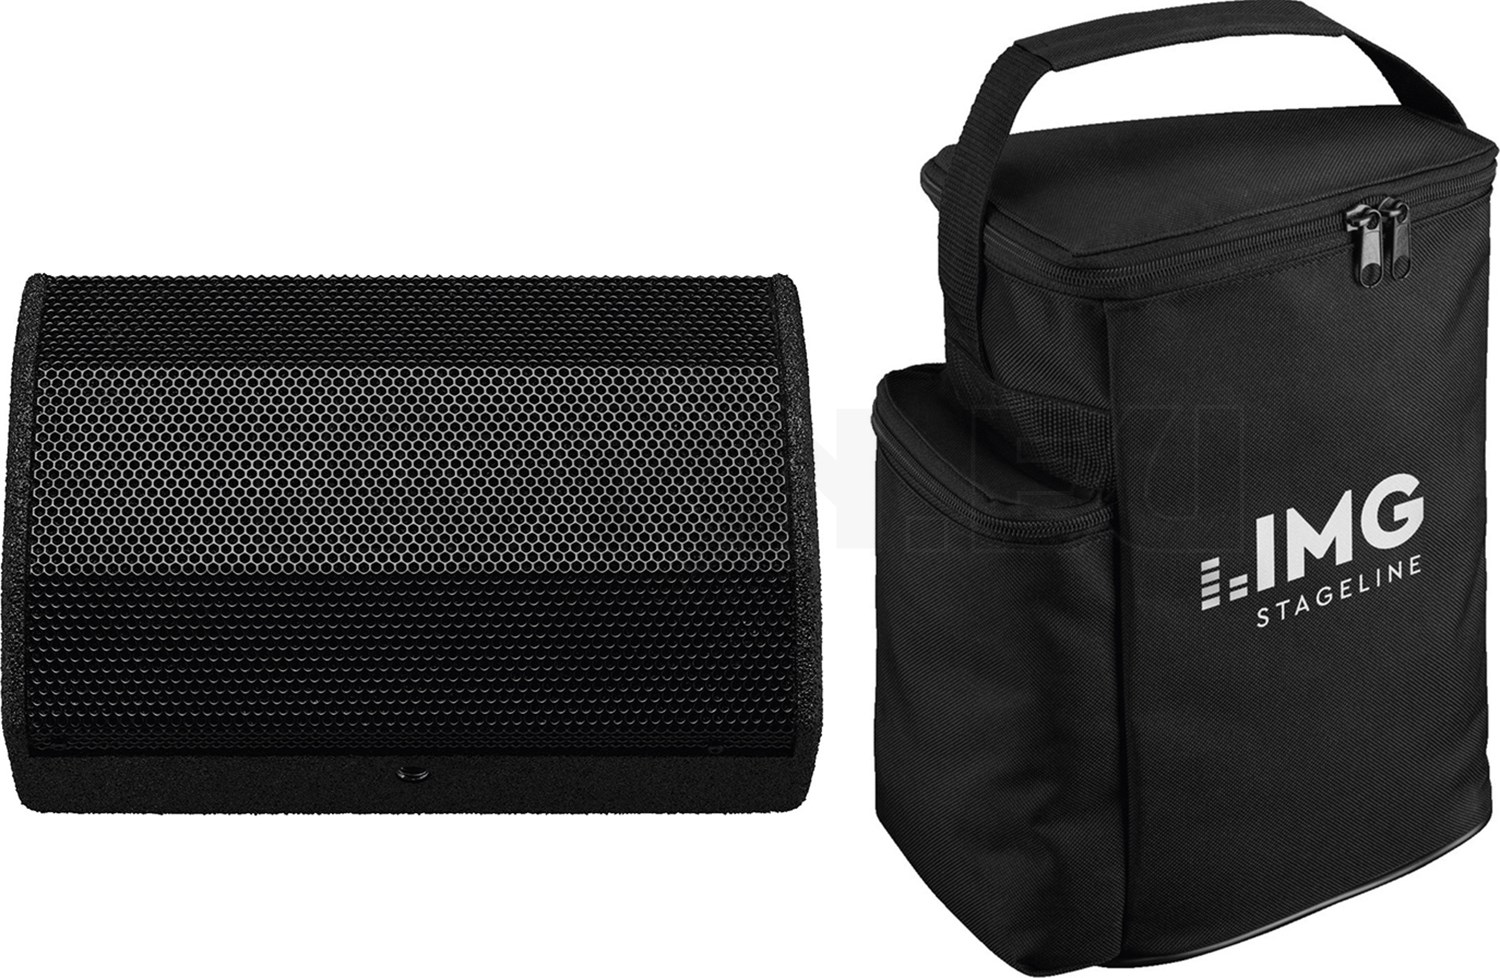 IMG Flat-M200 Bag Transport Schutz Tasche für Flat-M200 PA-Speaker Nylon Schwarz 